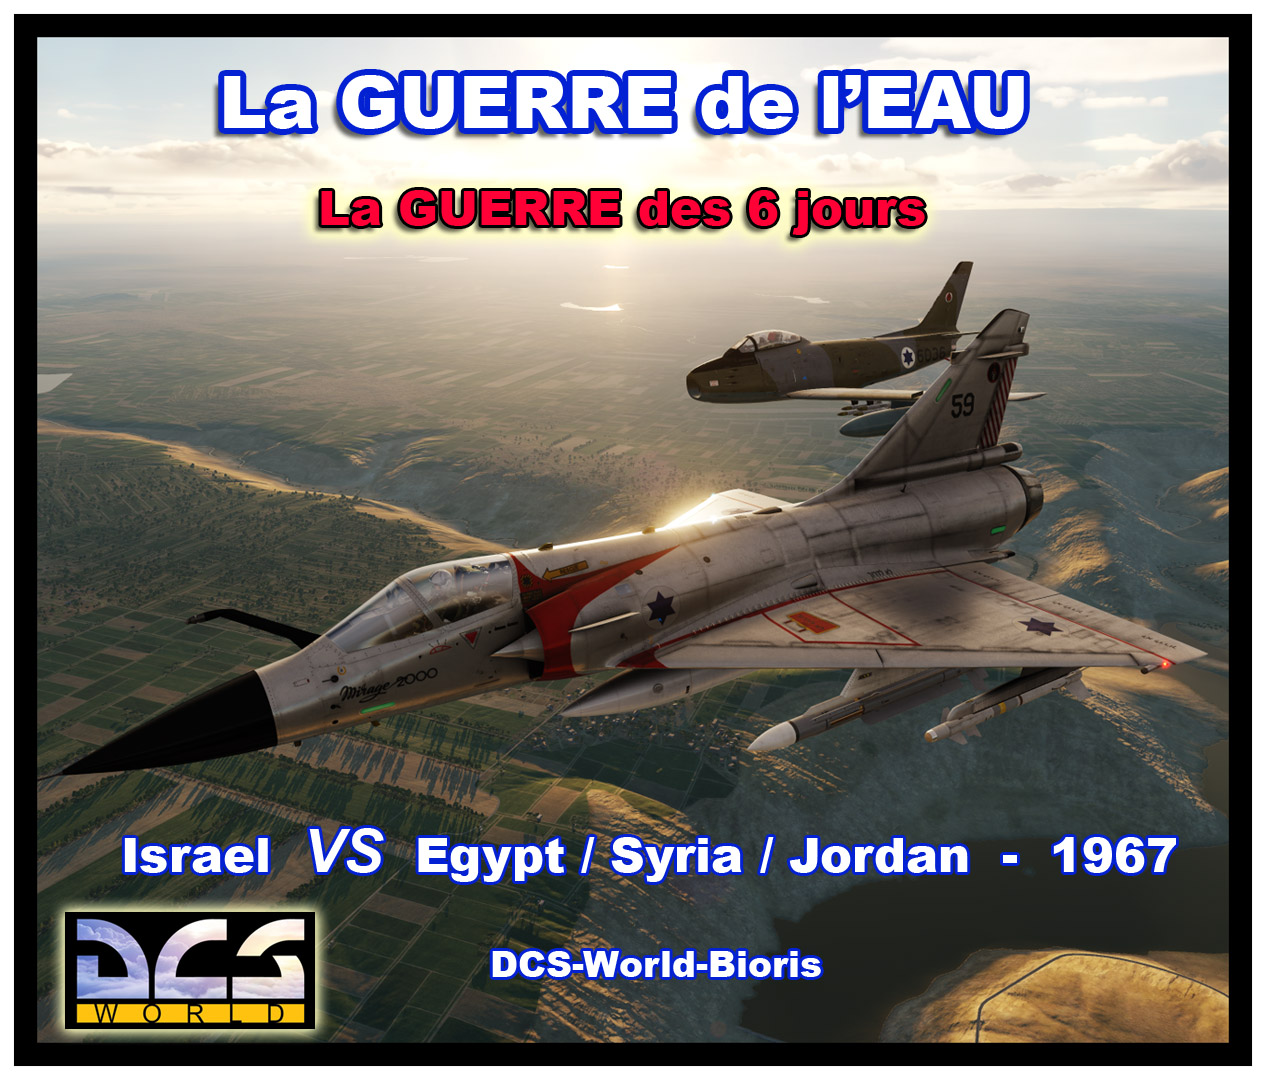 Guerre des 6 jours - La Guerre de l'eau - Israël 1967 - M-2000 / F-86 Sabre - SINAI